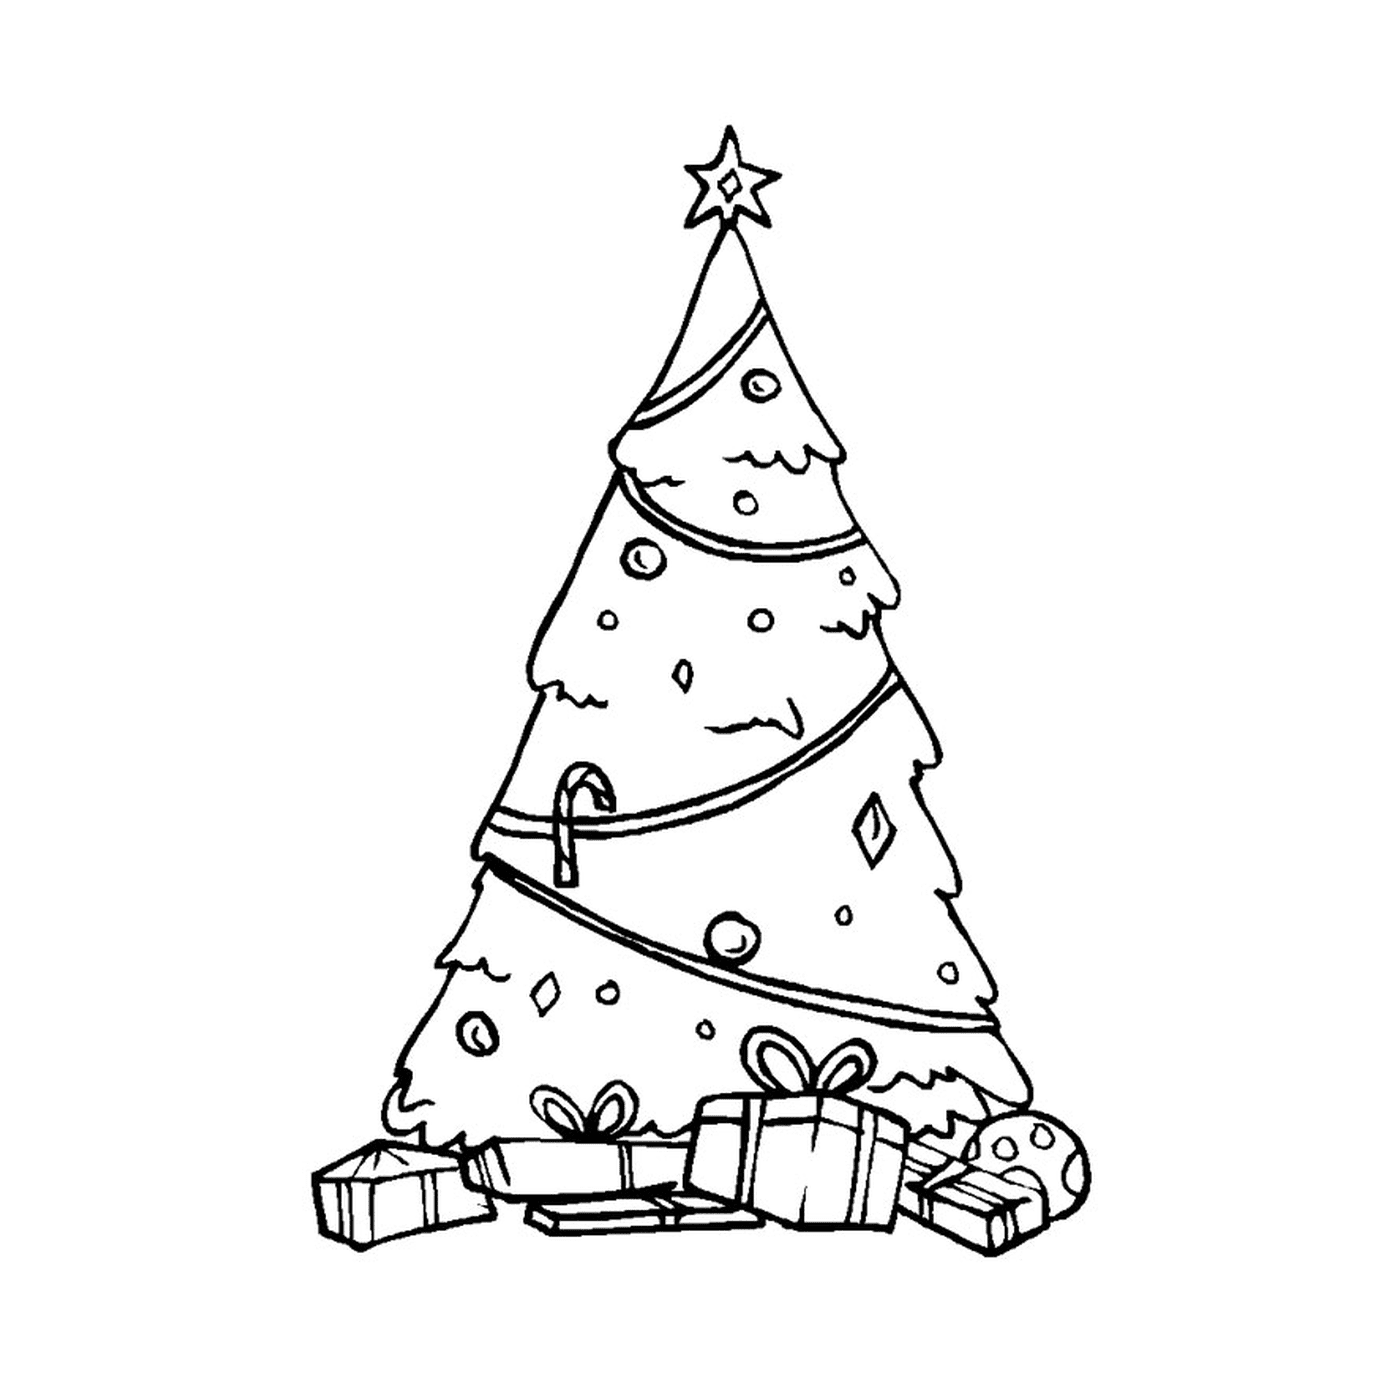  Ein traditioneller Weihnachtsbaum 